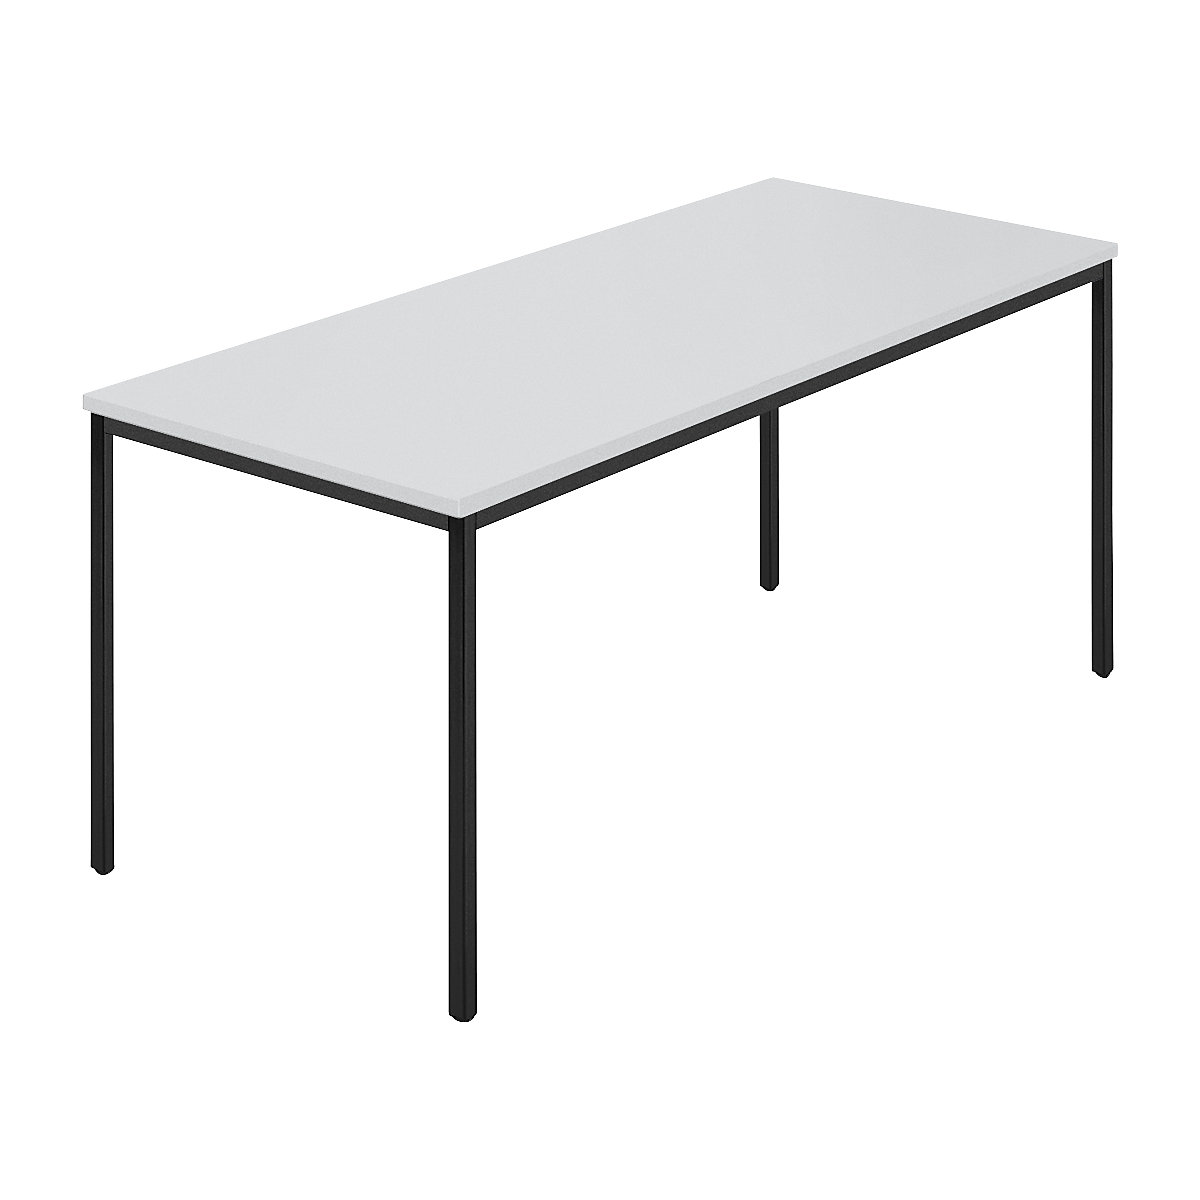 Pravokutni stol, presvučena četverokutna cijev, ŠxD 1600 x 800 mm, u sivoj / antracit boji-7